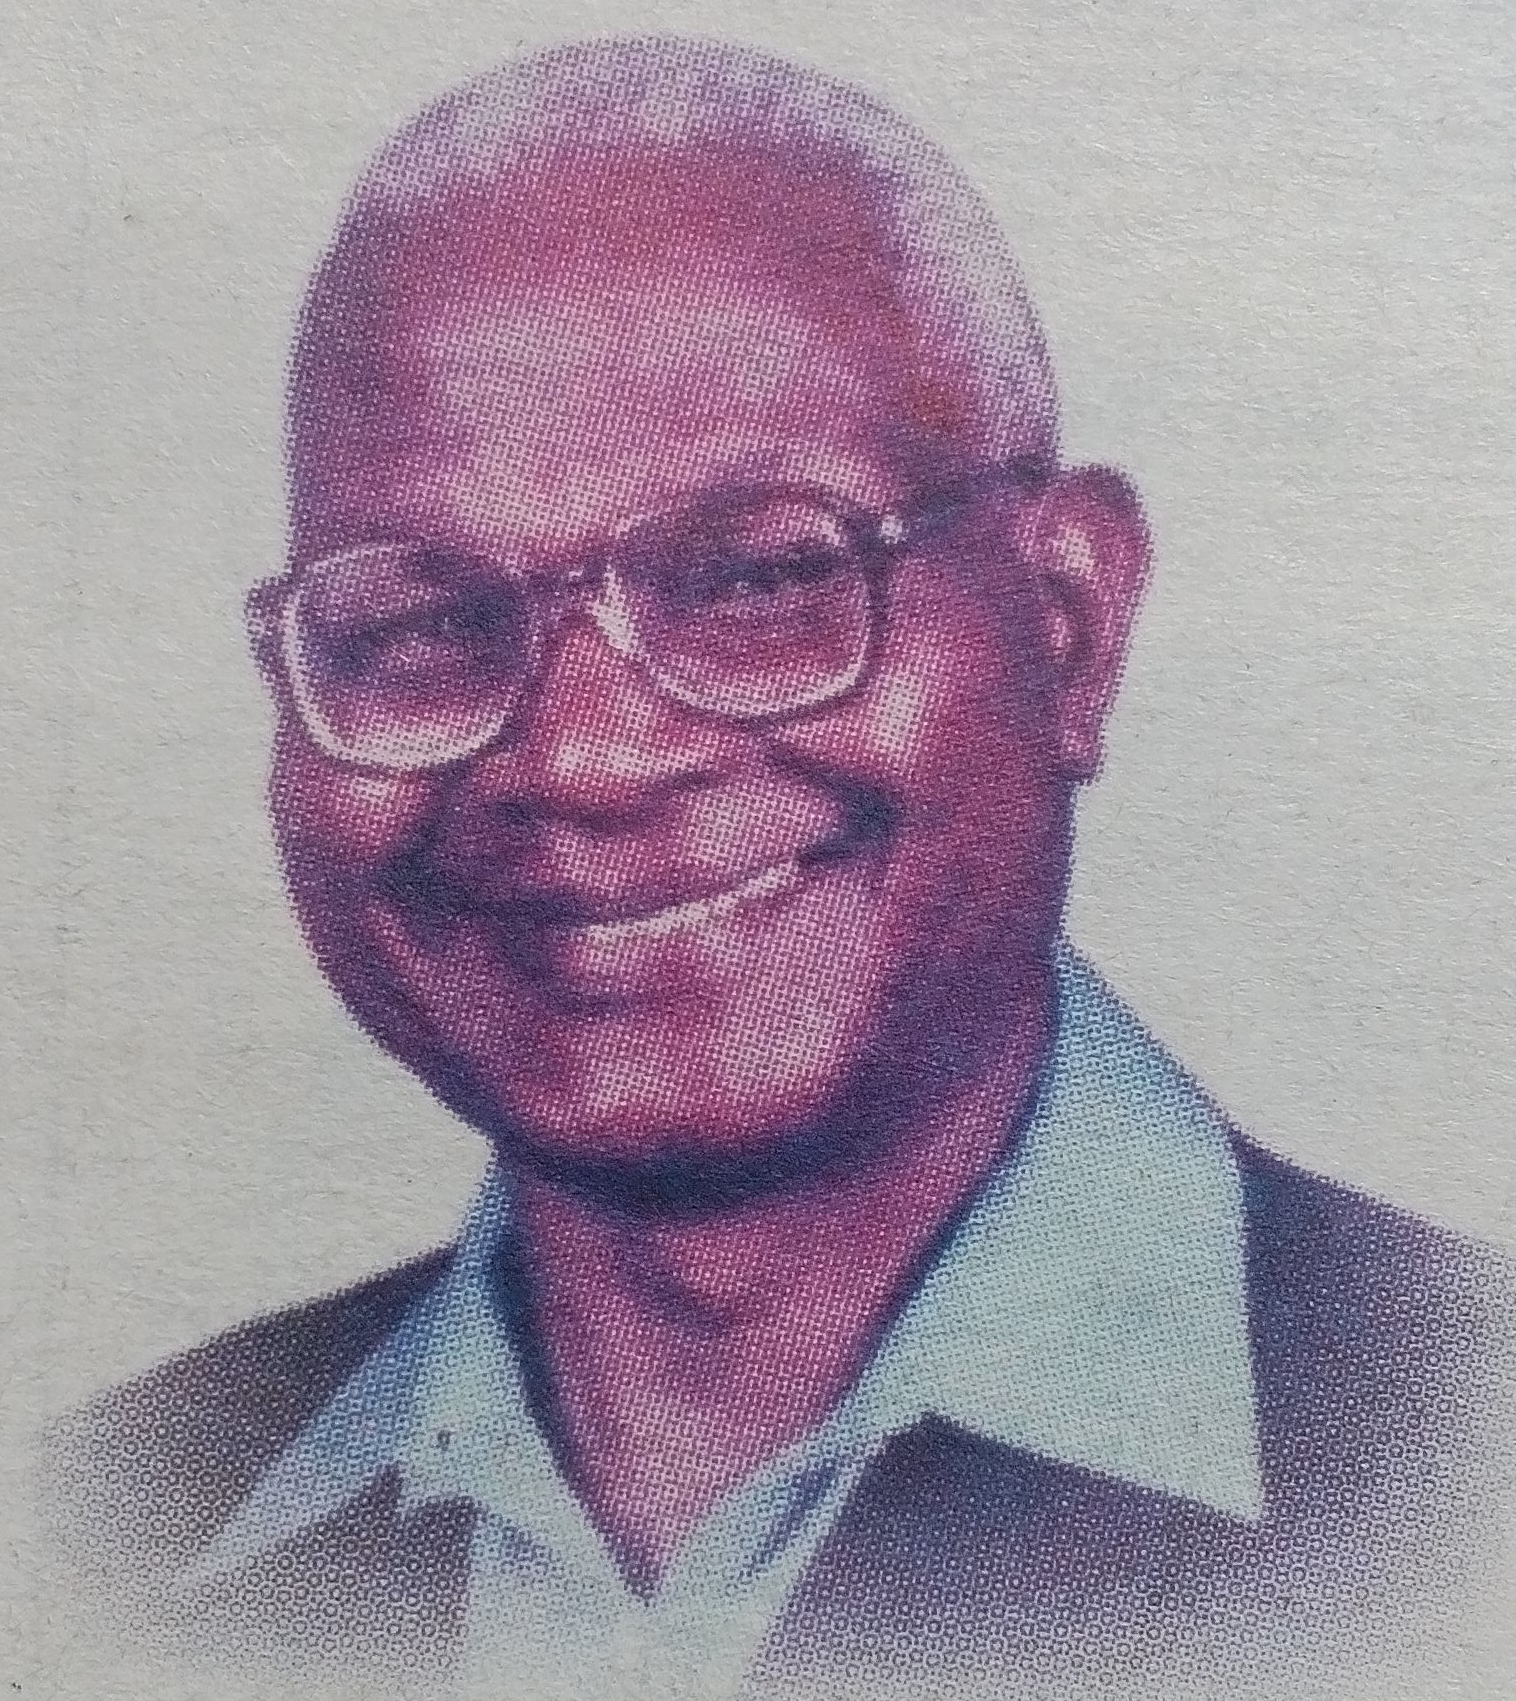 Obituary Image of Eliud Murimi Ng’ang’a